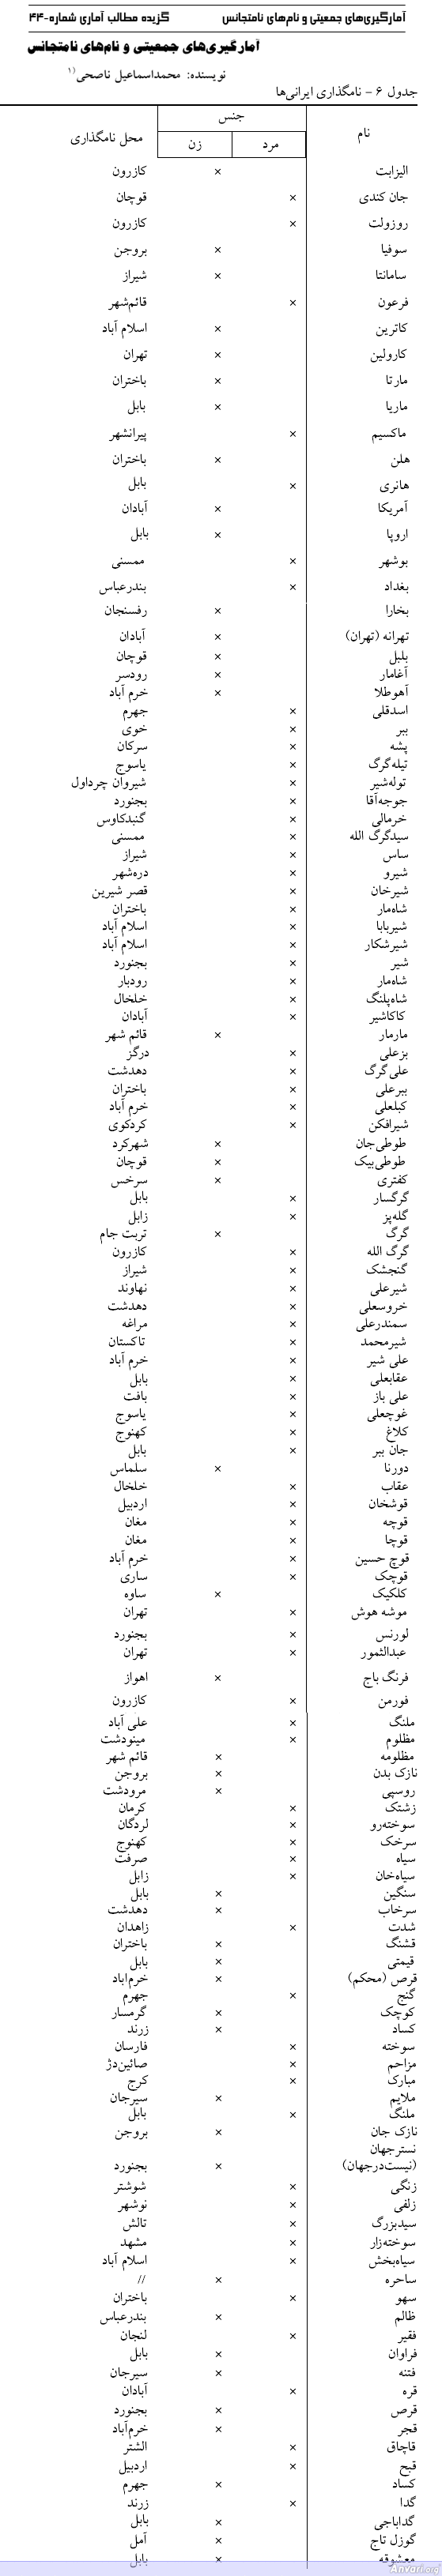 Weirdest Persian Names - Farsi 